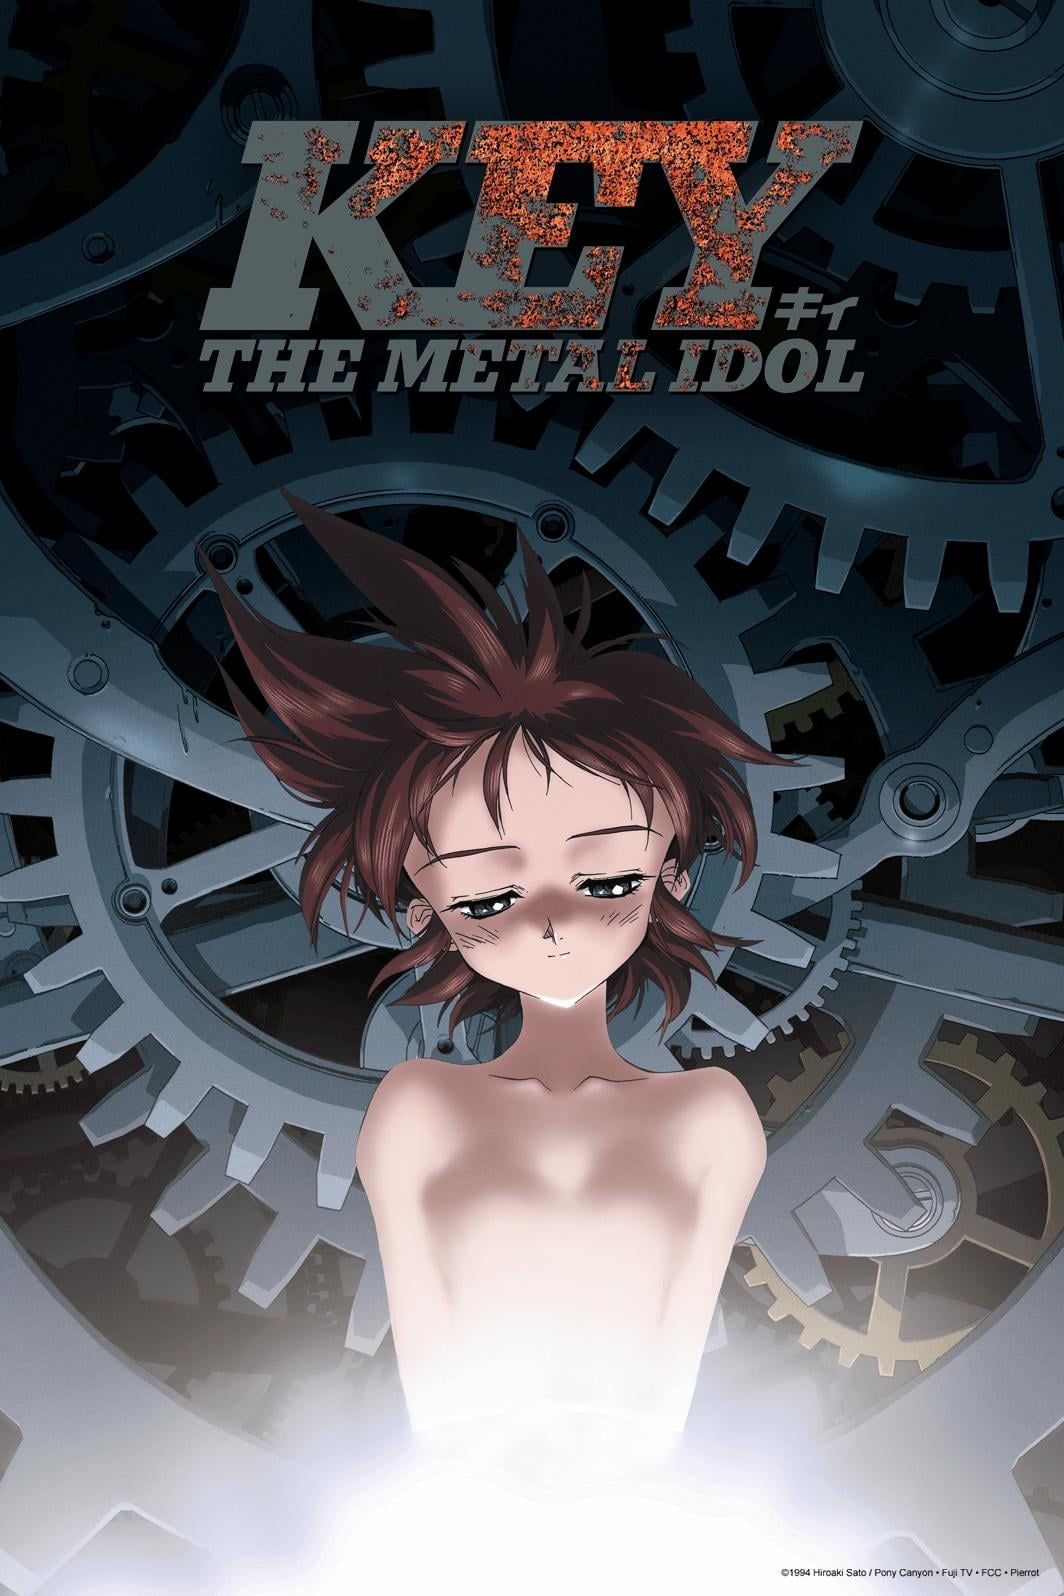 [Part 2] Key the Metal Idol (Dub) (OVA)